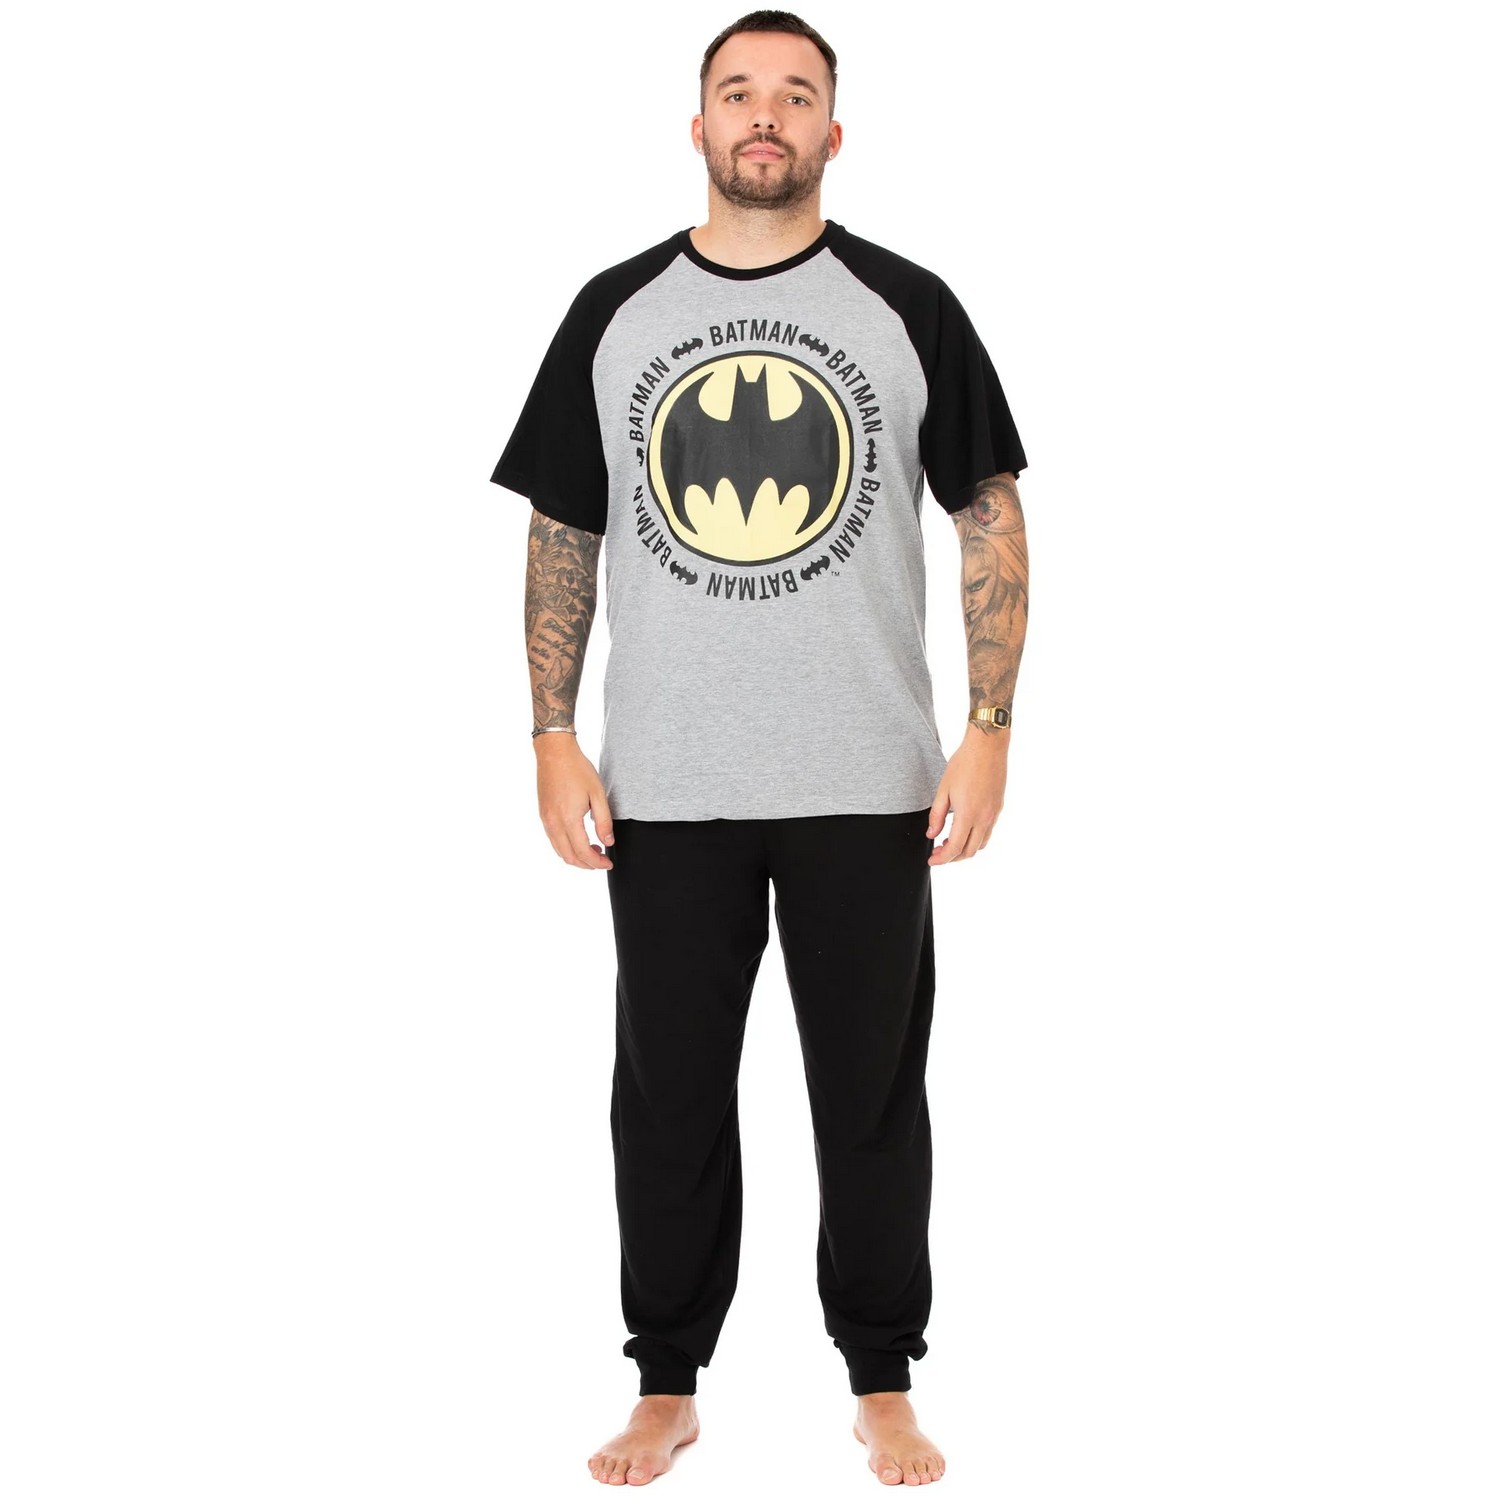 (バットマン) Batman オフィシャル商品 メンズ ロゴ パジャマ 半袖 上下セット 【海外通販】